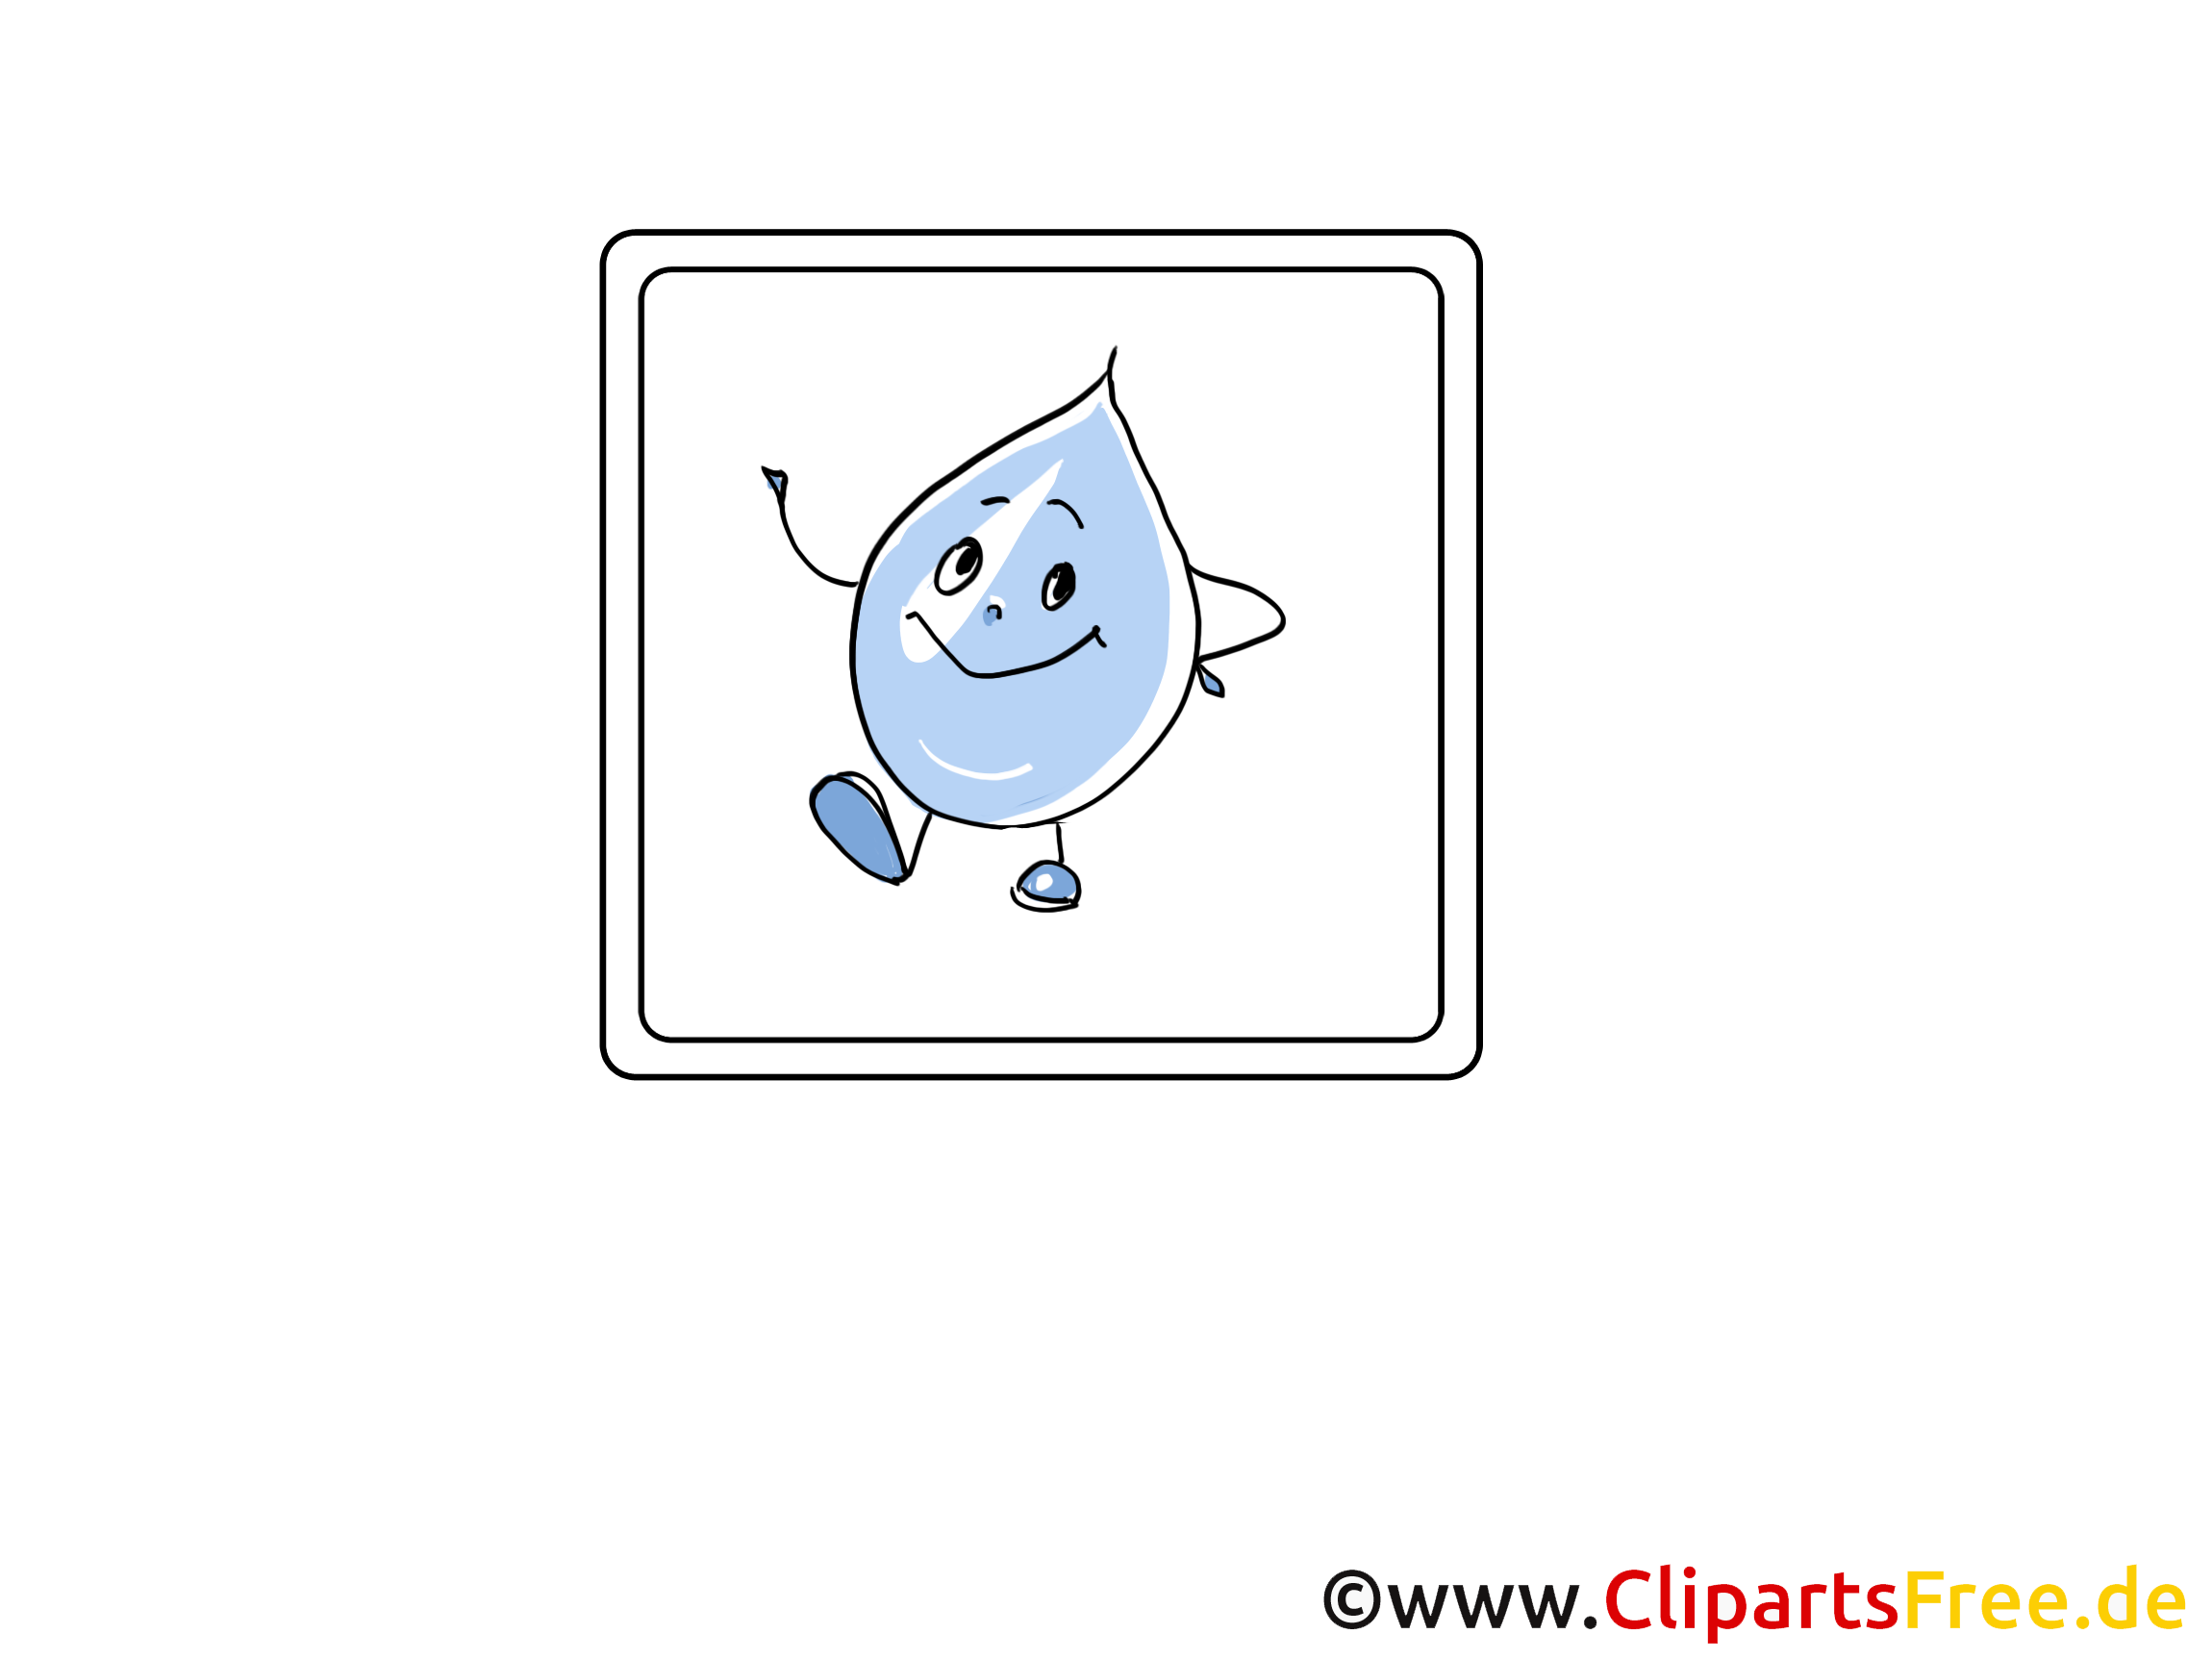 Goutte d'eau dessins gratuits - Pluie clipart